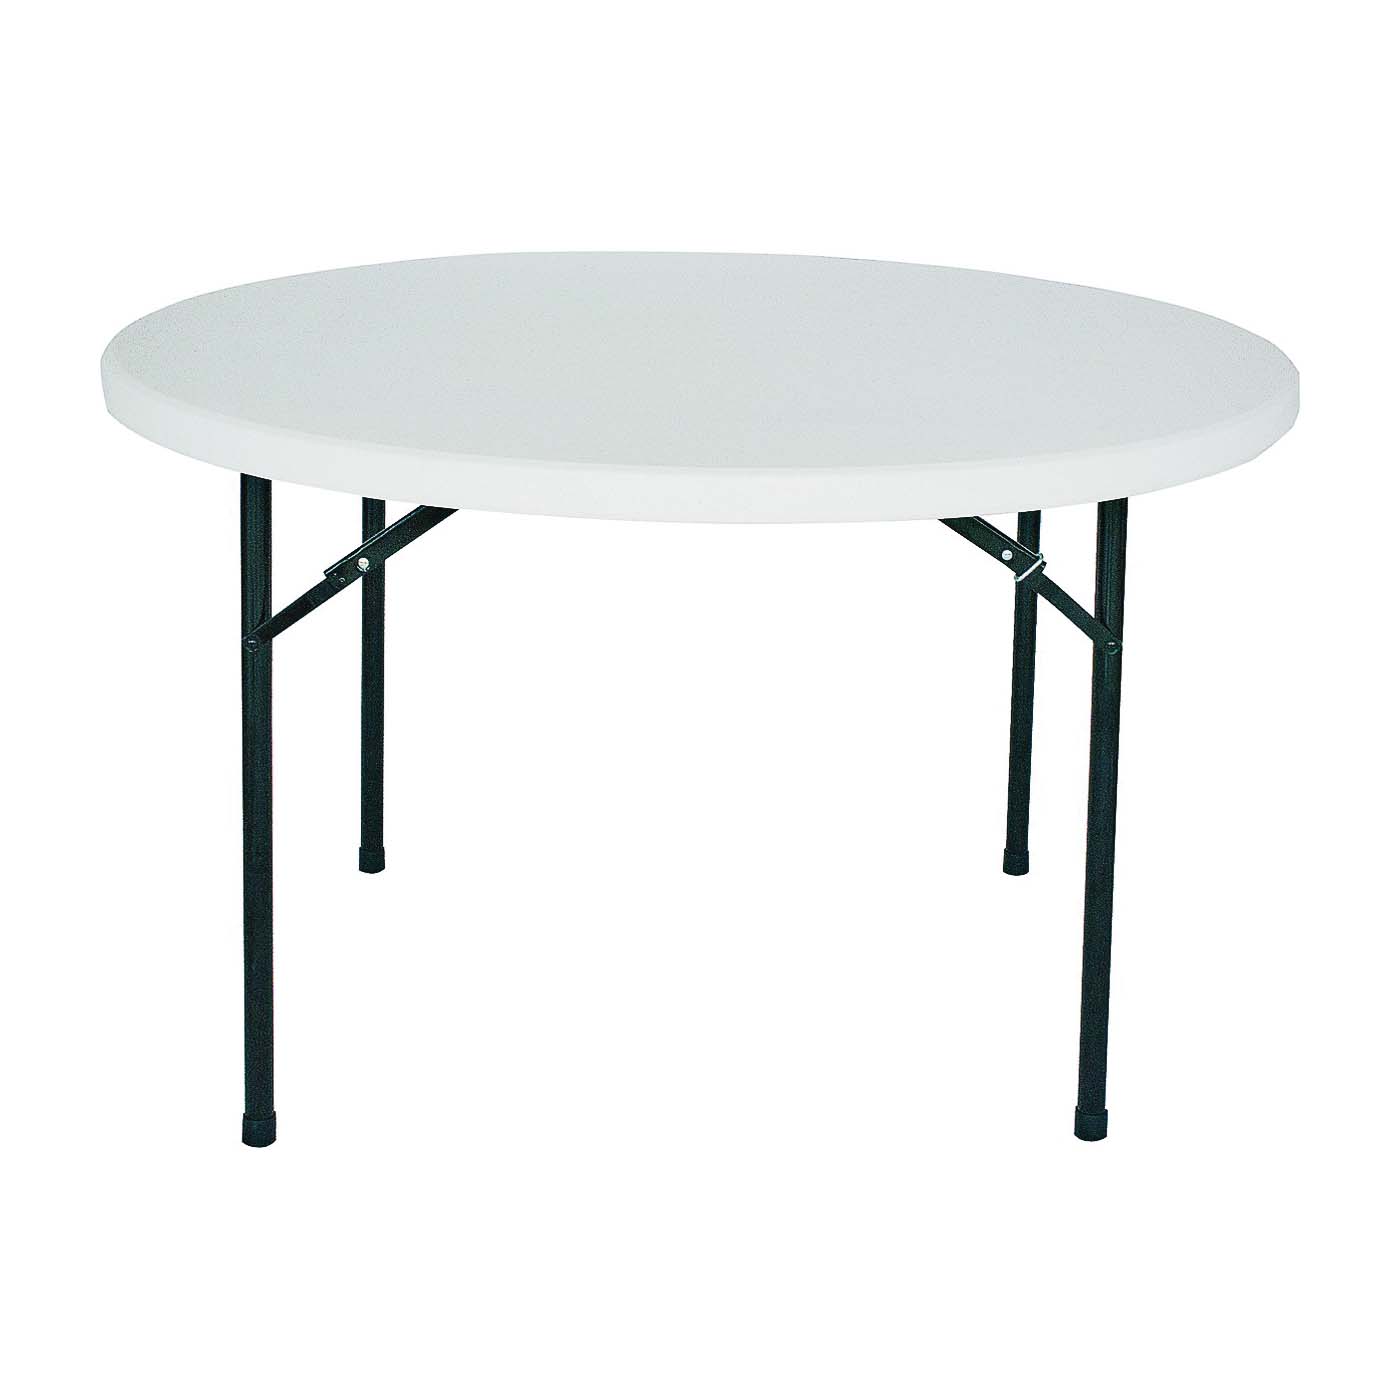 BT048X001A Folding Table, 48 in OAW, 48 in OAD, 29-1/4 in OAH, Steel Frame, Polyethylene Tabletop